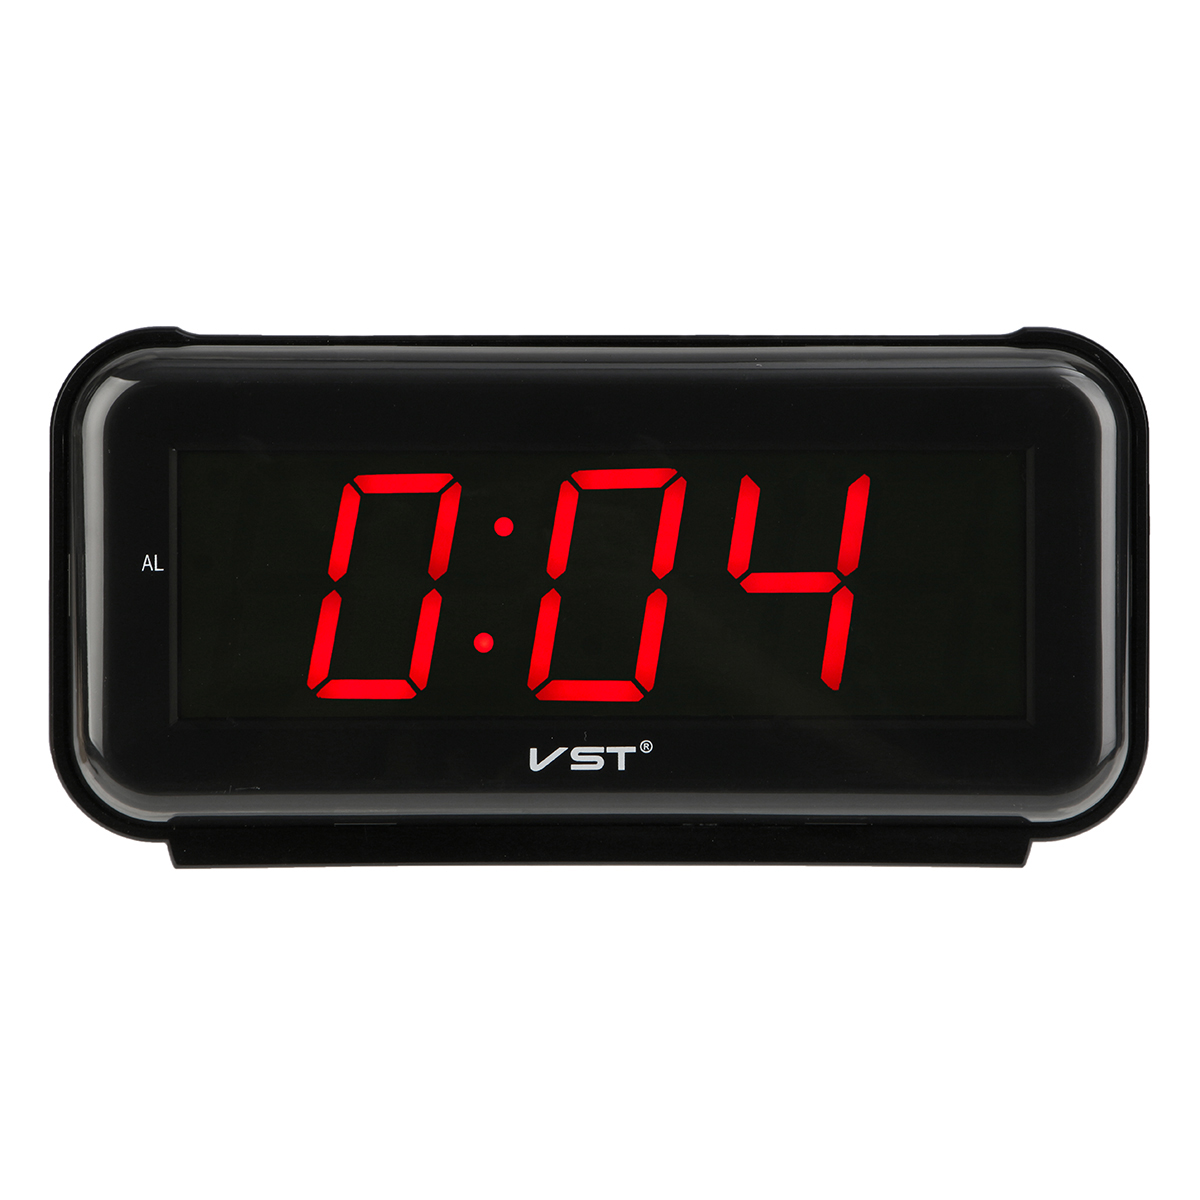 Таймер настольный. VST светодиодный цифровой будильник. Часы VST Alarm Clock. Часы настольные VST 763-1 красные. Электронные часы Snooze VST.